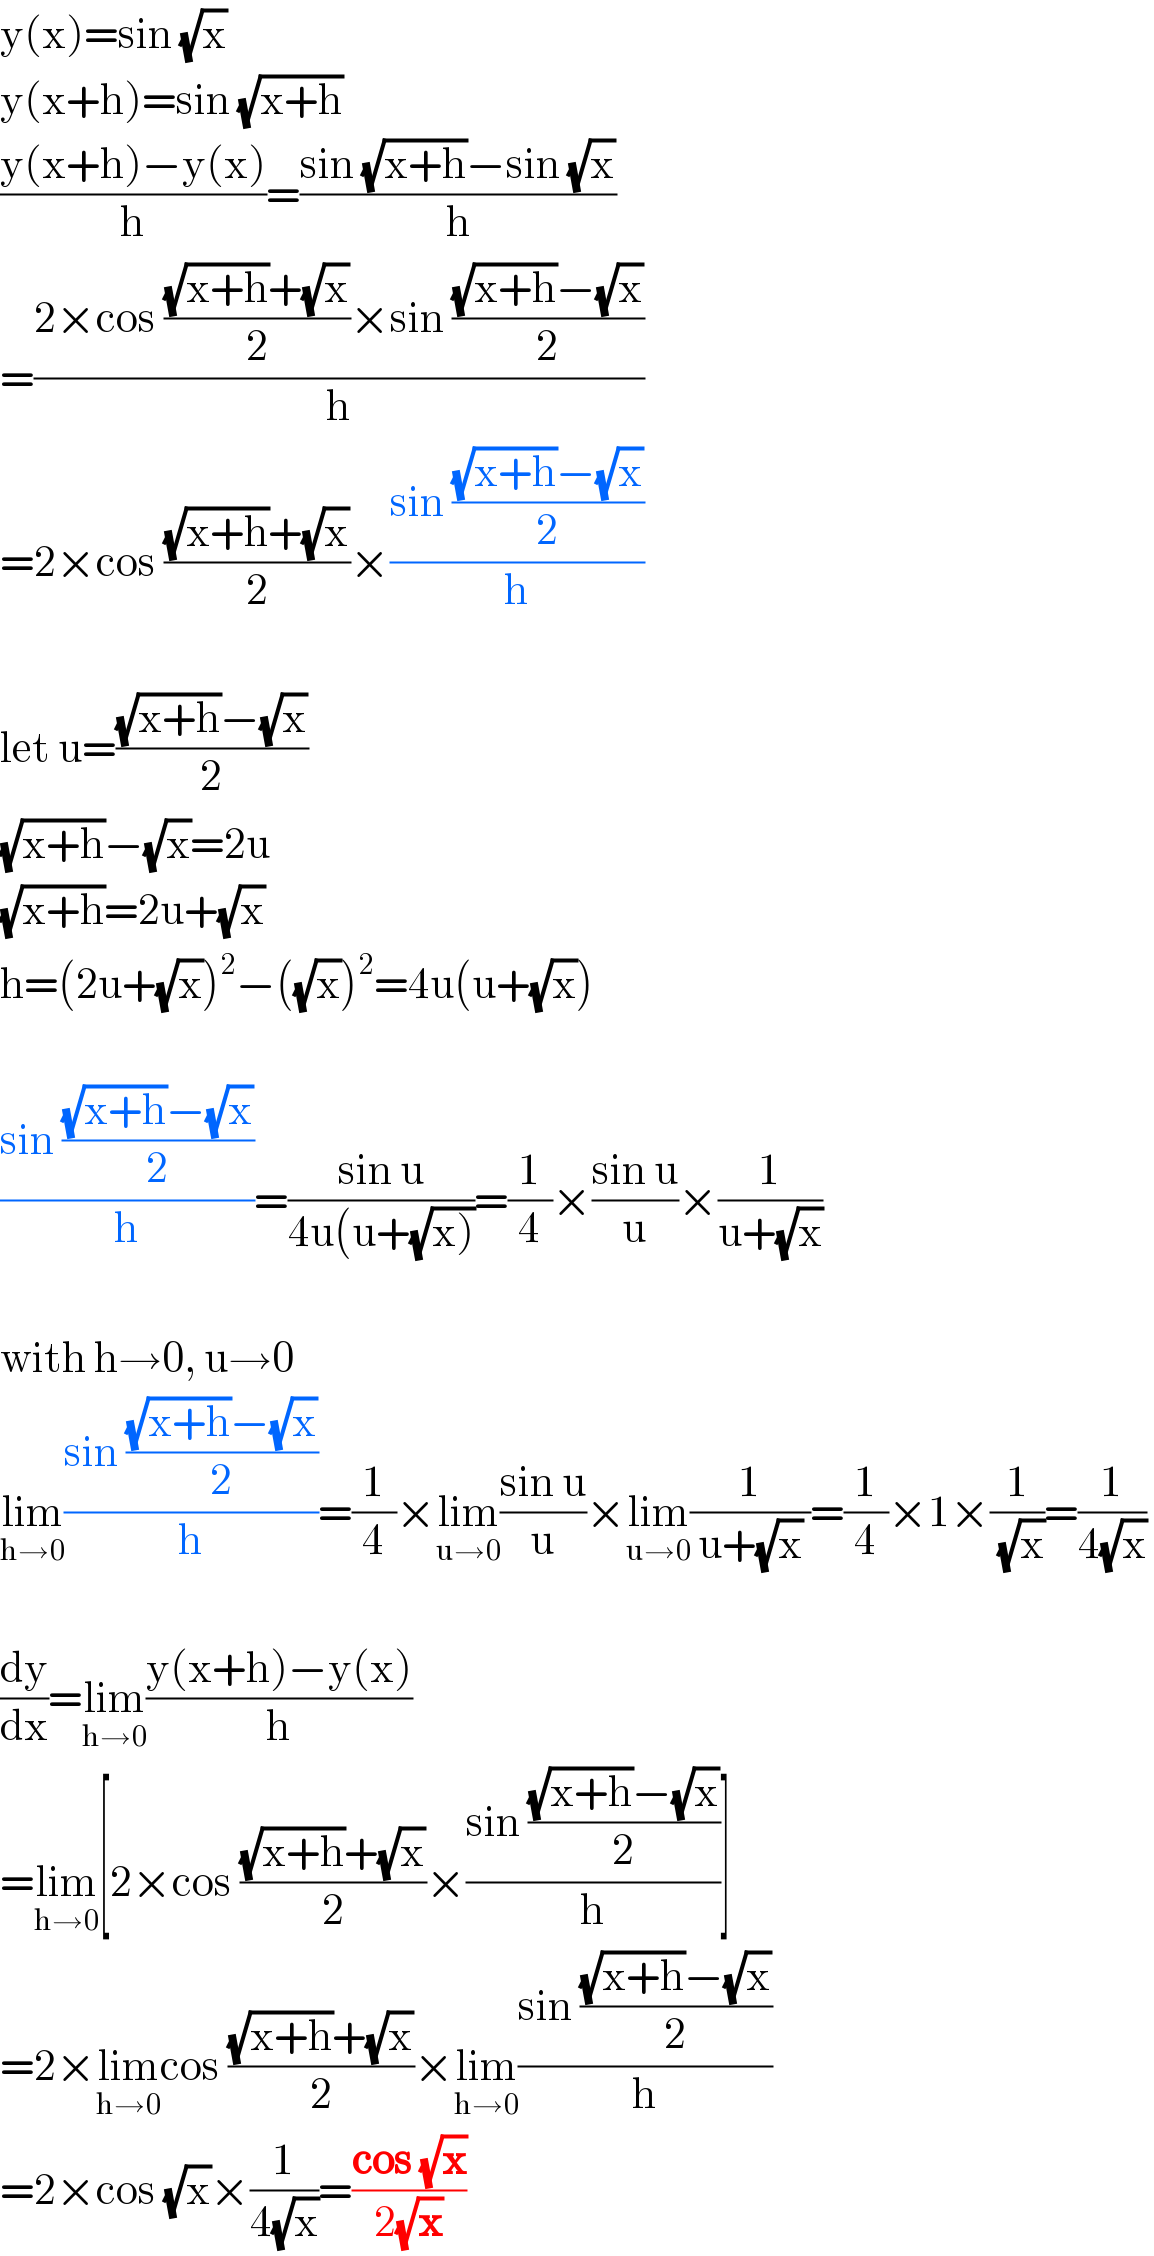 y(x)=sin (√x)  y(x+h)=sin (√(x+h))  ((y(x+h)−y(x))/h)=((sin (√(x+h))−sin (√x))/h)  =((2×cos (((√(x+h))+(√x))/2)×sin (((√(x+h))−(√x))/2))/h)  =2×cos (((√(x+h))+(√x))/2)×((sin (((√(x+h))−(√x))/2))/h)    let u=(((√(x+h))−(√x))/2)  (√(x+h))−(√x)=2u  (√(x+h))=2u+(√x)  h=(2u+(√x))^2 −((√x))^2 =4u(u+(√x))    ((sin (((√(x+h))−(√x))/2))/h)=((sin u)/(4u(u+(√(x)))))=(1/4)×((sin u)/u)×(1/(u+(√x)))    with h→0, u→0  lim_(h→0) ((sin (((√(x+h))−(√x))/2))/h)=(1/4)×lim_(u→0) ((sin u)/u)×lim_(u→0) (1/( u+(√x) ))=(1/4)×1×(1/(√x))=(1/(4(√x)))    (dy/dx)=lim_(h→0) ((y(x+h)−y(x))/h)  =lim_(h→0) [2×cos (((√(x+h))+(√x))/2)×((sin (((√(x+h))−(√x))/2))/h)]  =2×lim_(h→0) cos (((√(x+h))+(√x))/2)×lim_(h→0) ((sin (((√(x+h))−(√x))/2))/h)  =2×cos (√x)×(1/(4(√x)))=((cos (√x))/(2(√x)))  